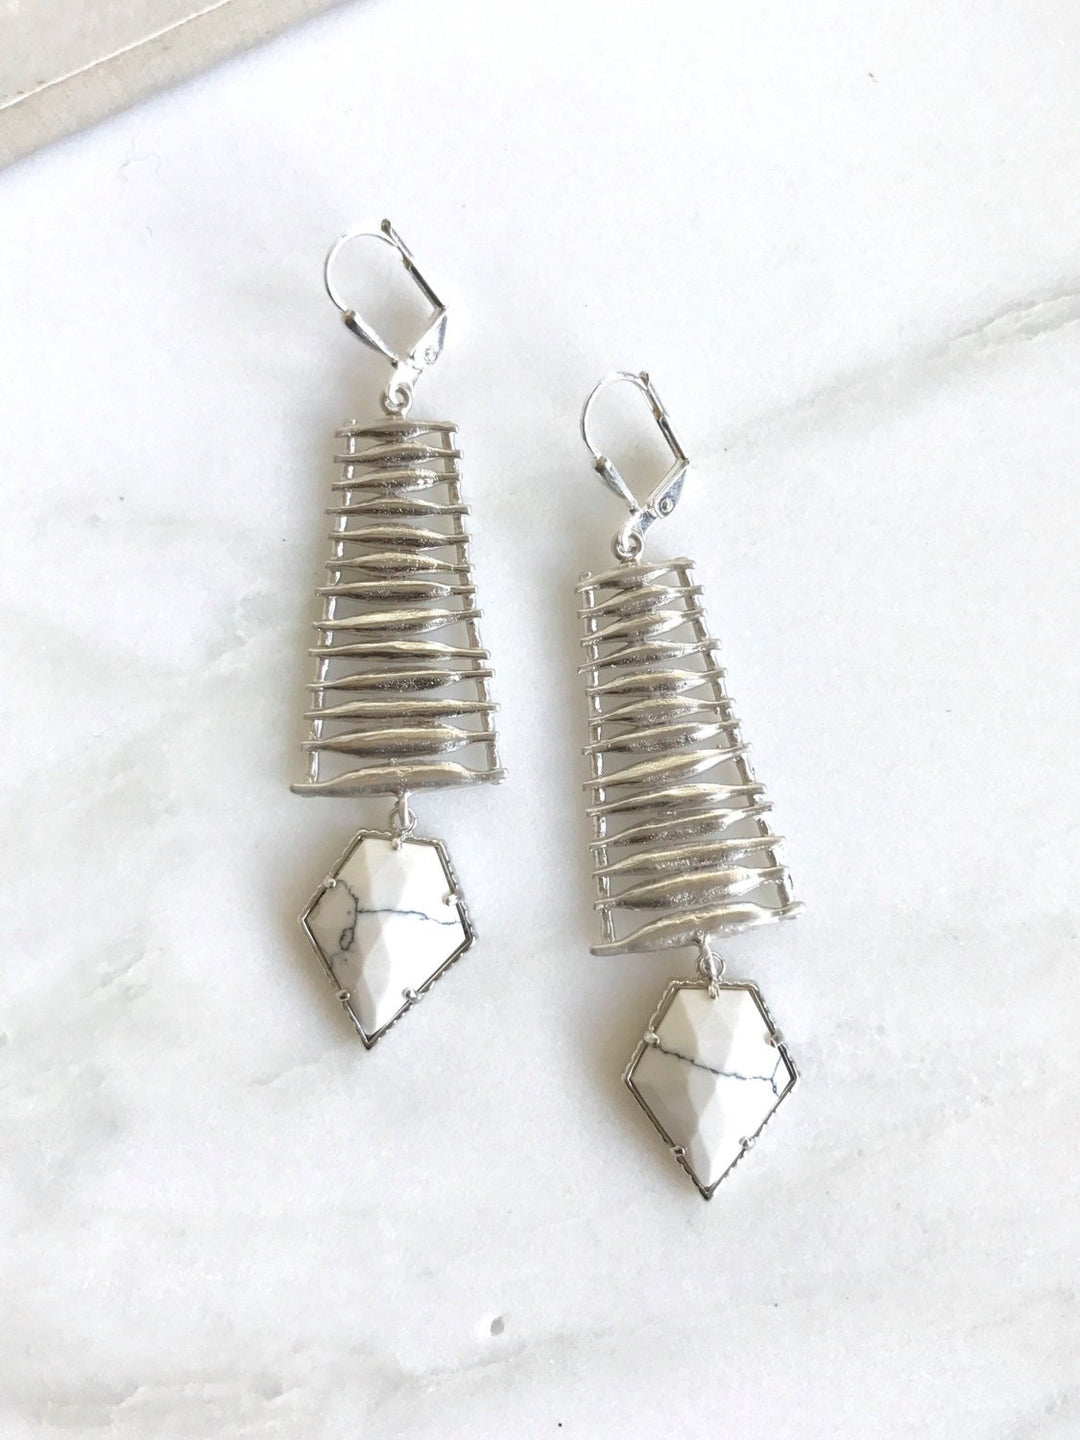 Unique White Arrow Dangle Earrings in Silver. Statement Dangle Earrings. Chandelier Earrings. Fashion. Drop. Modern Jewelry. Gift